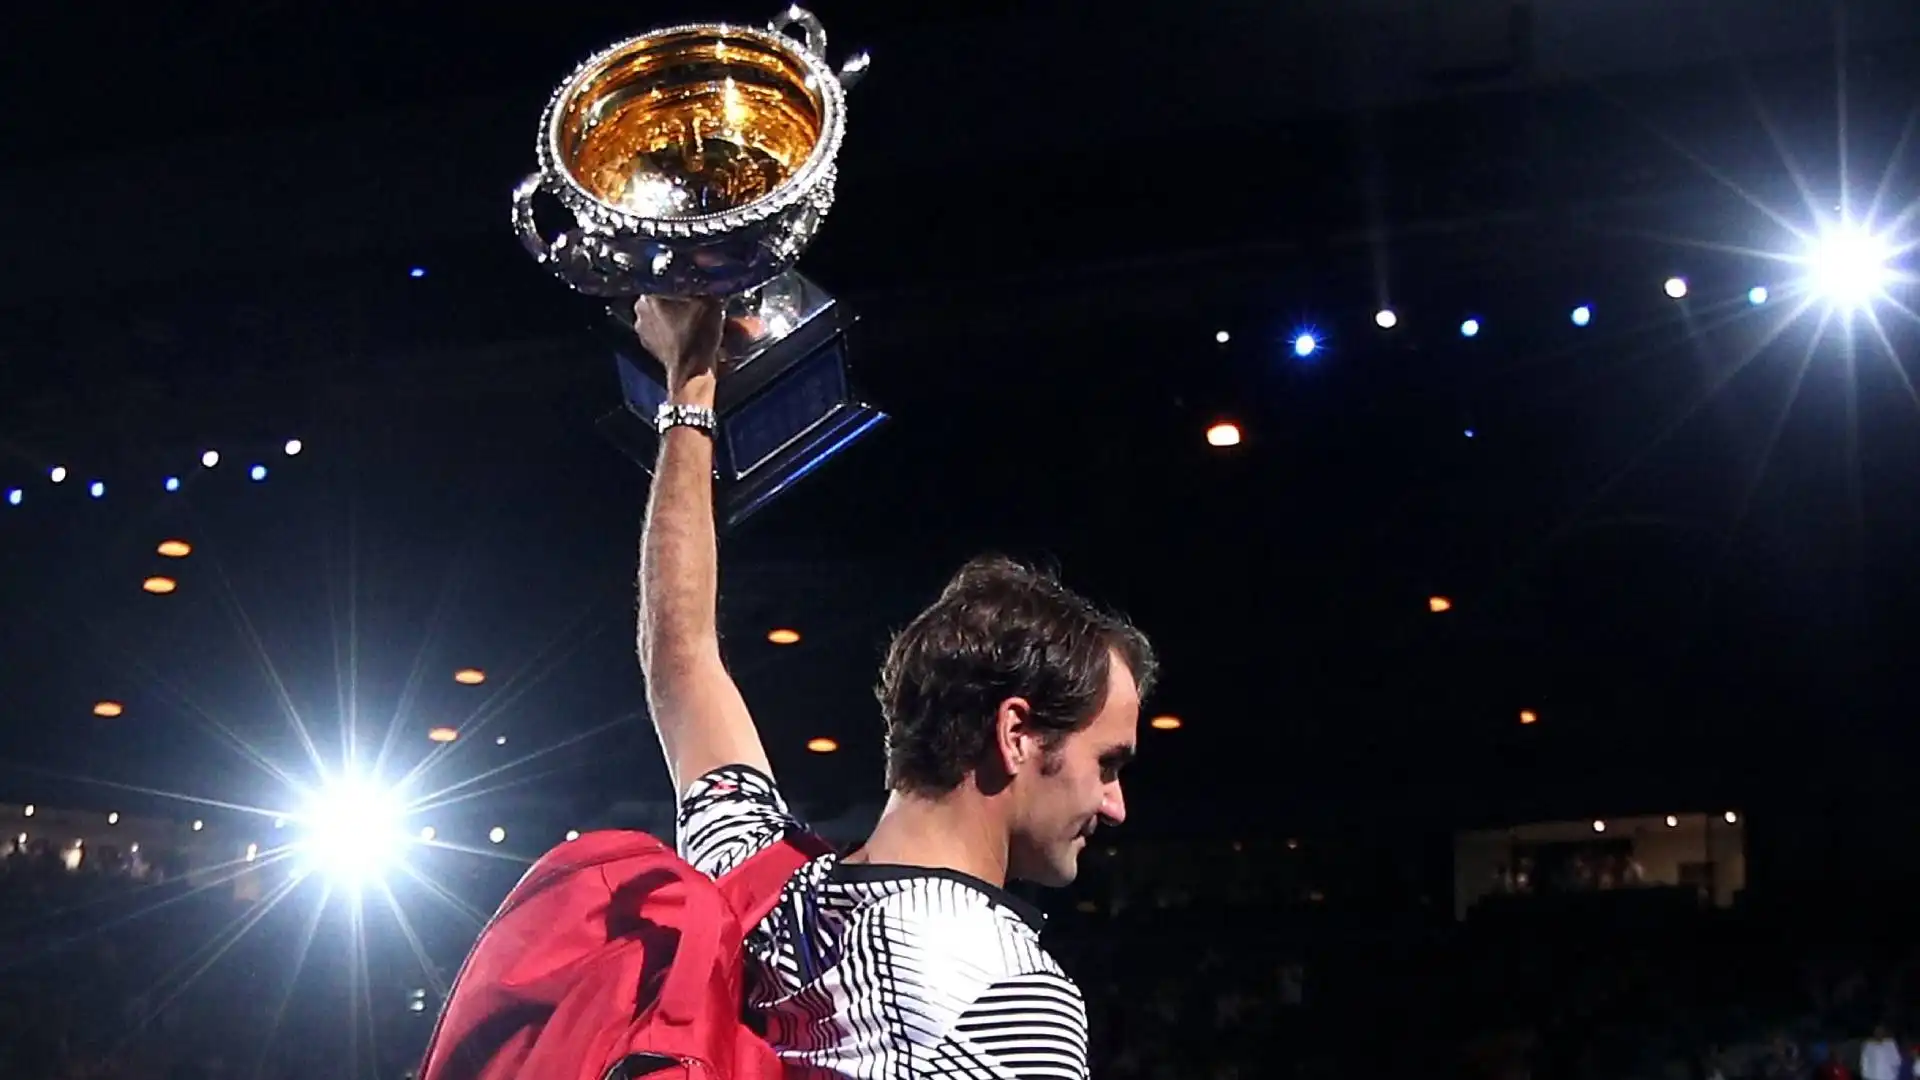 Anche agli Australian Open Federer ha avuto un successo incredibile: ha sollevato il trofeo in sei occasioni (2004, 2006, 2007, 2010, 2017, 2018)